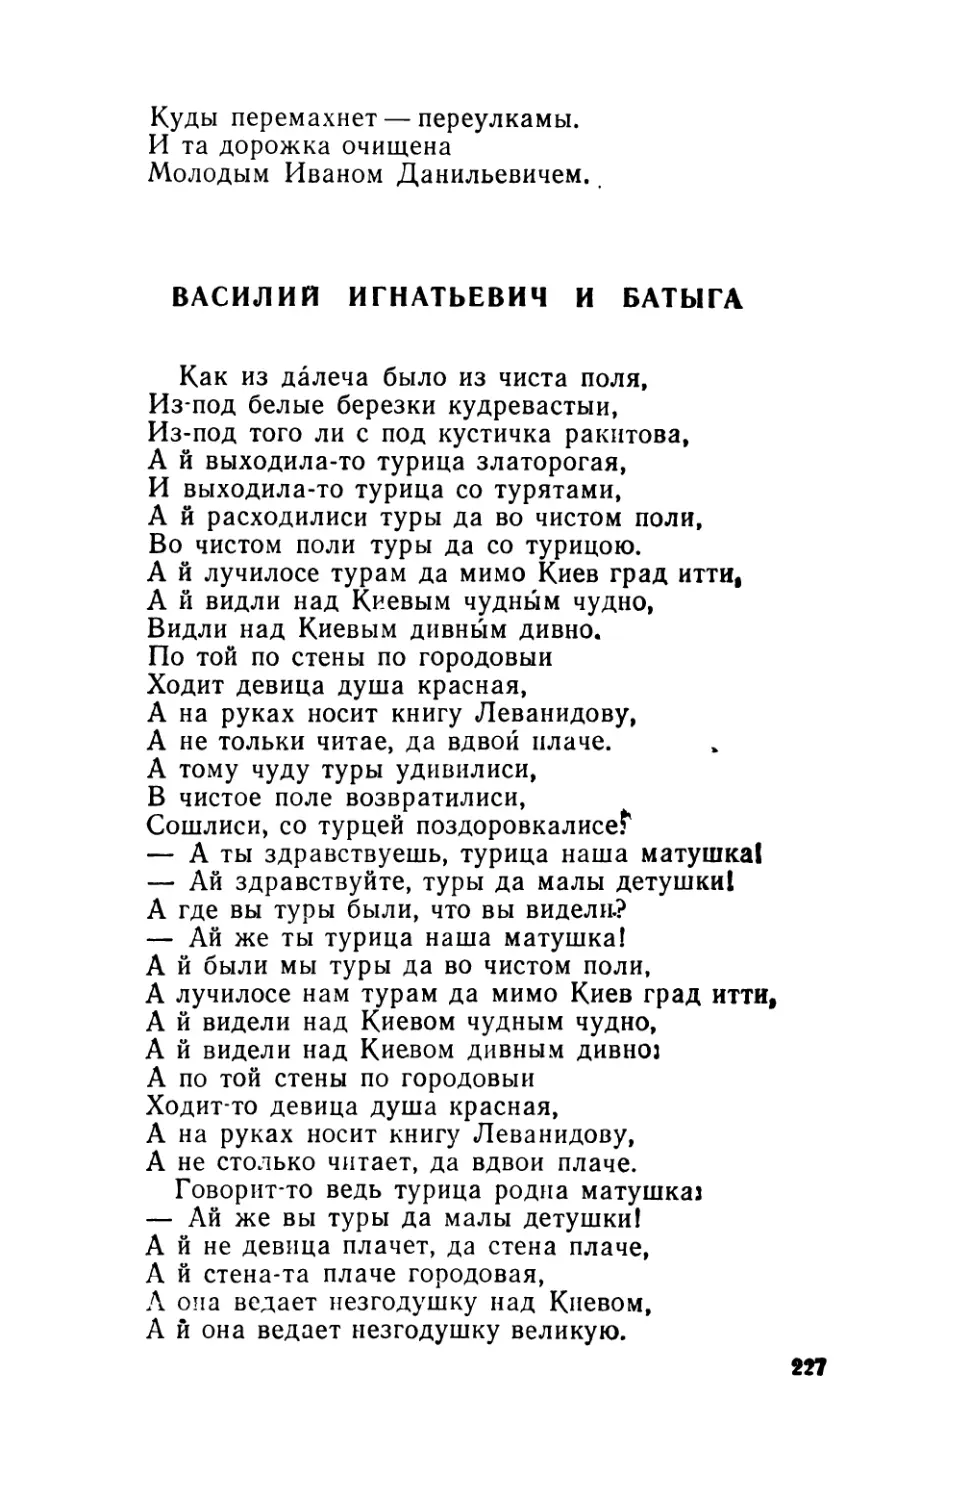 Василий Игнатьевич и Батыга